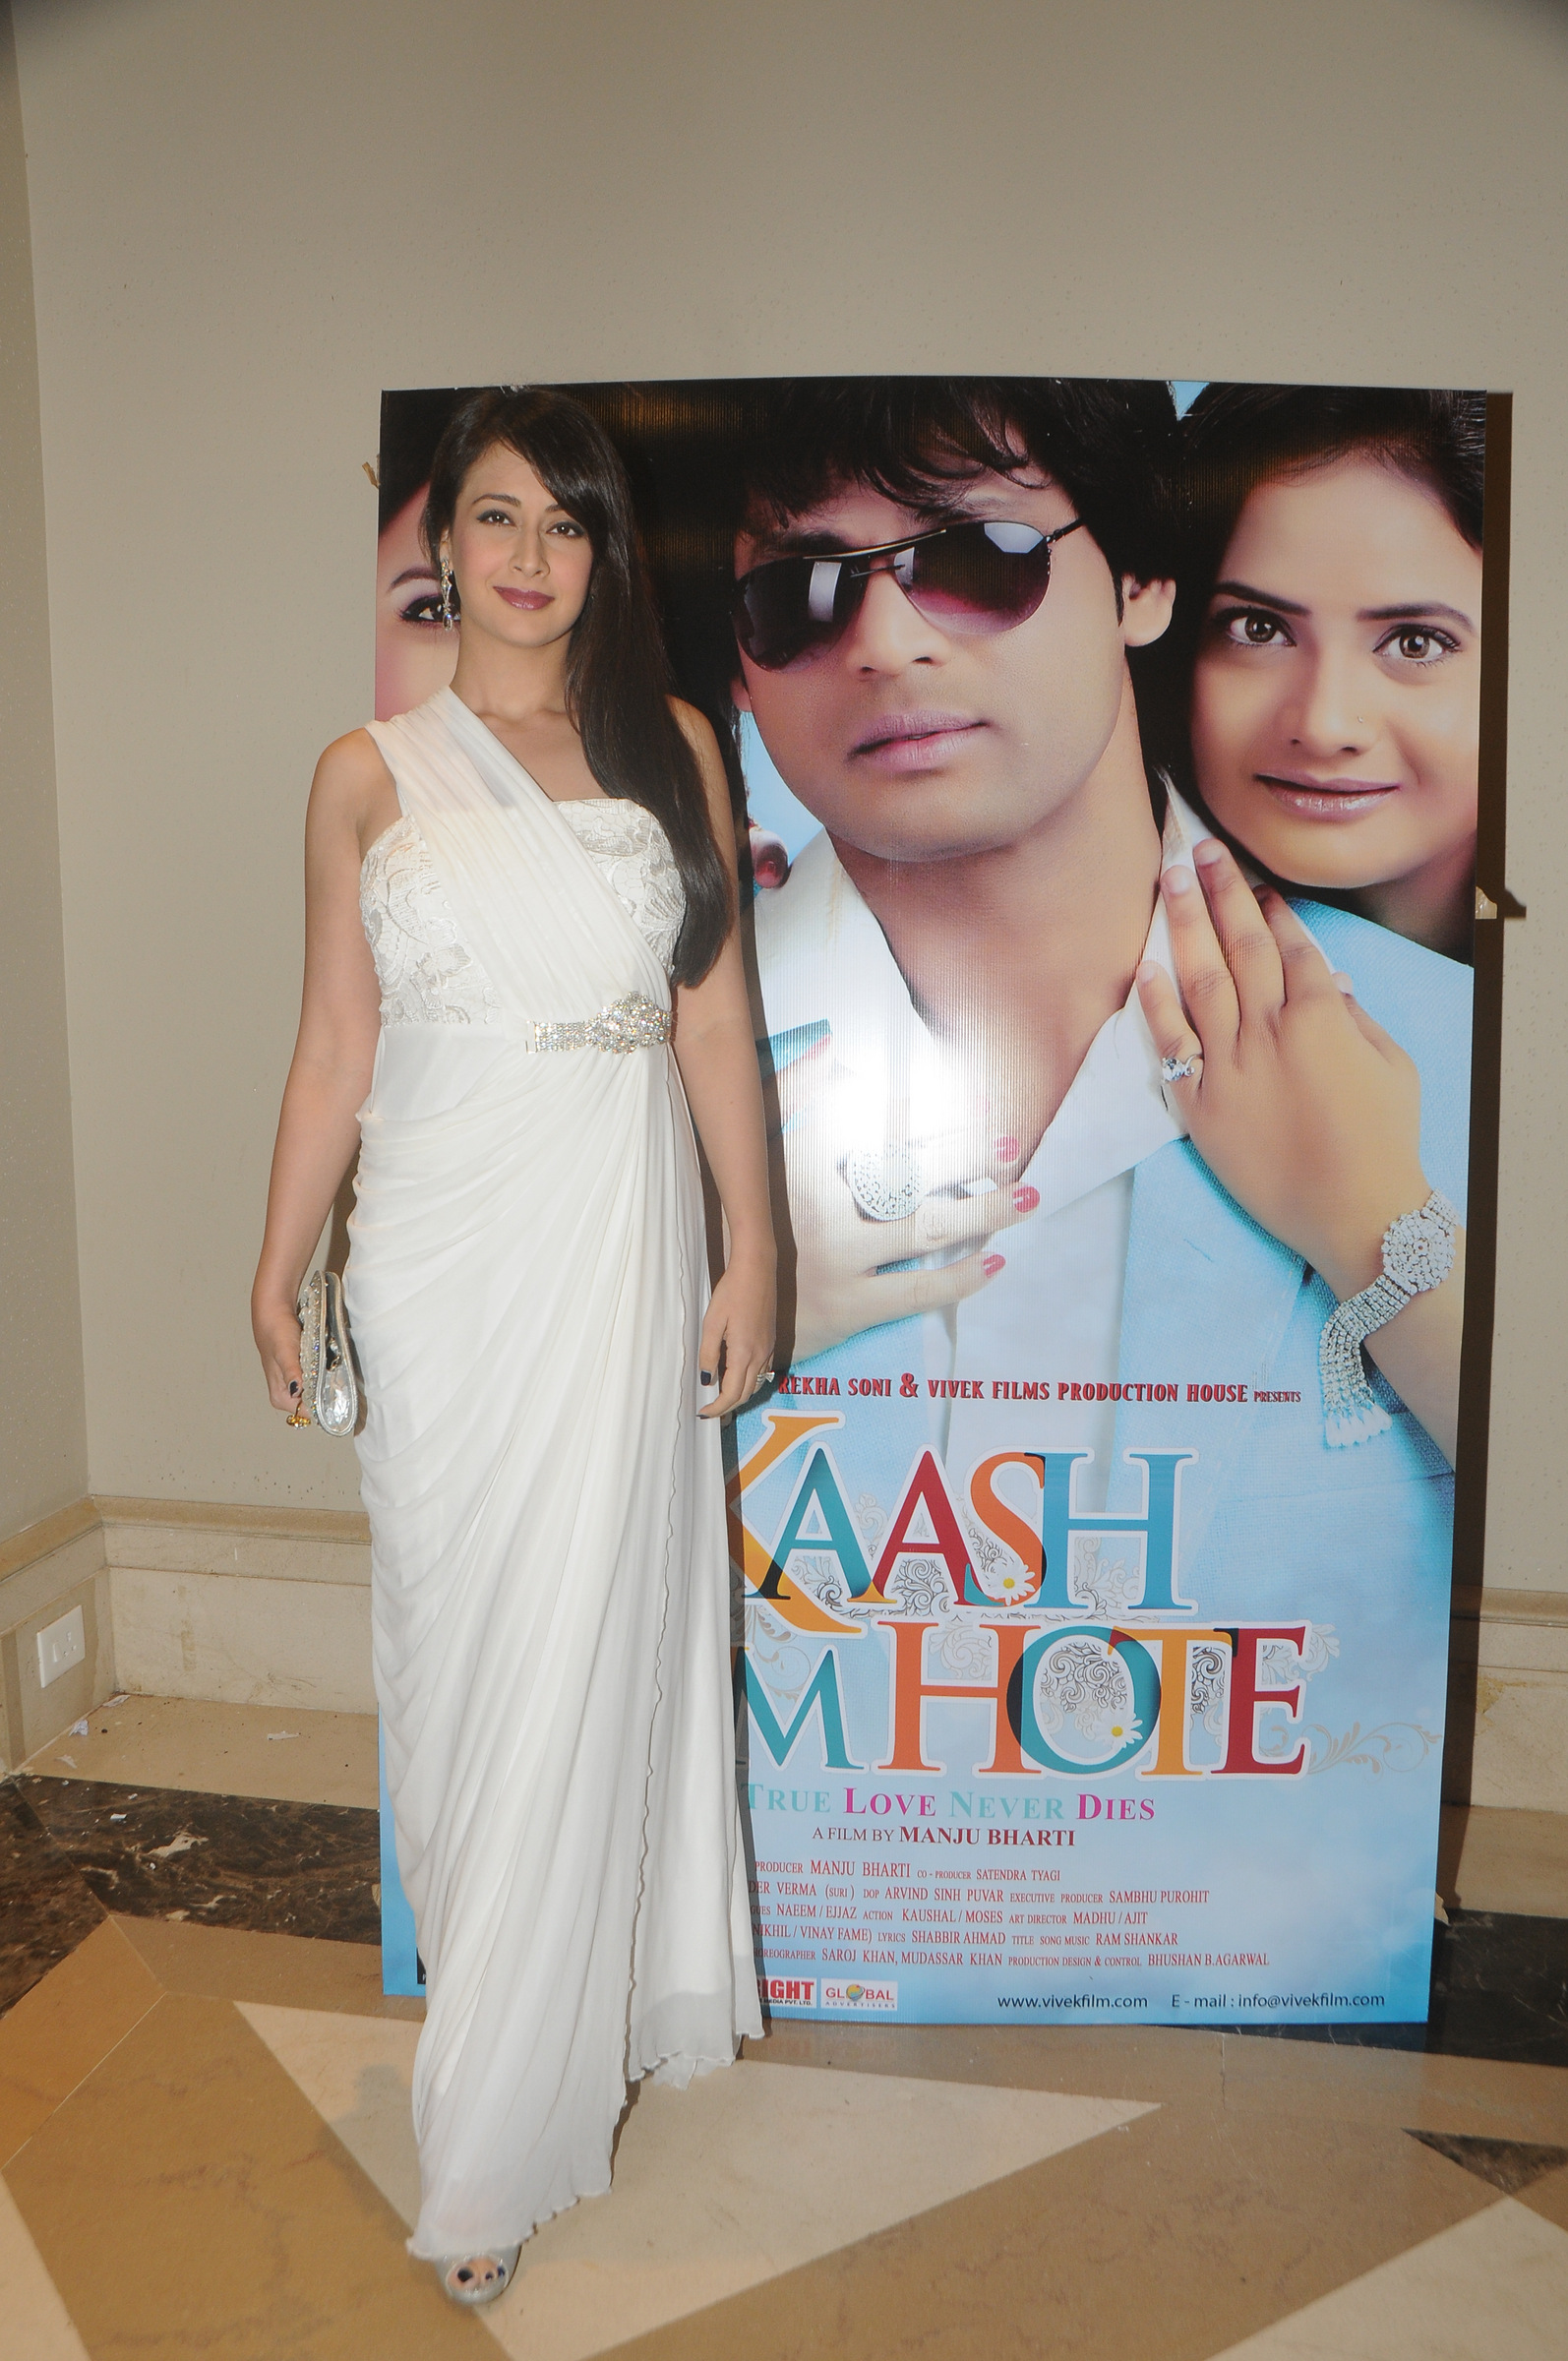 Preeti Jhangiani at Kaash Tum Hote Trailer Launch